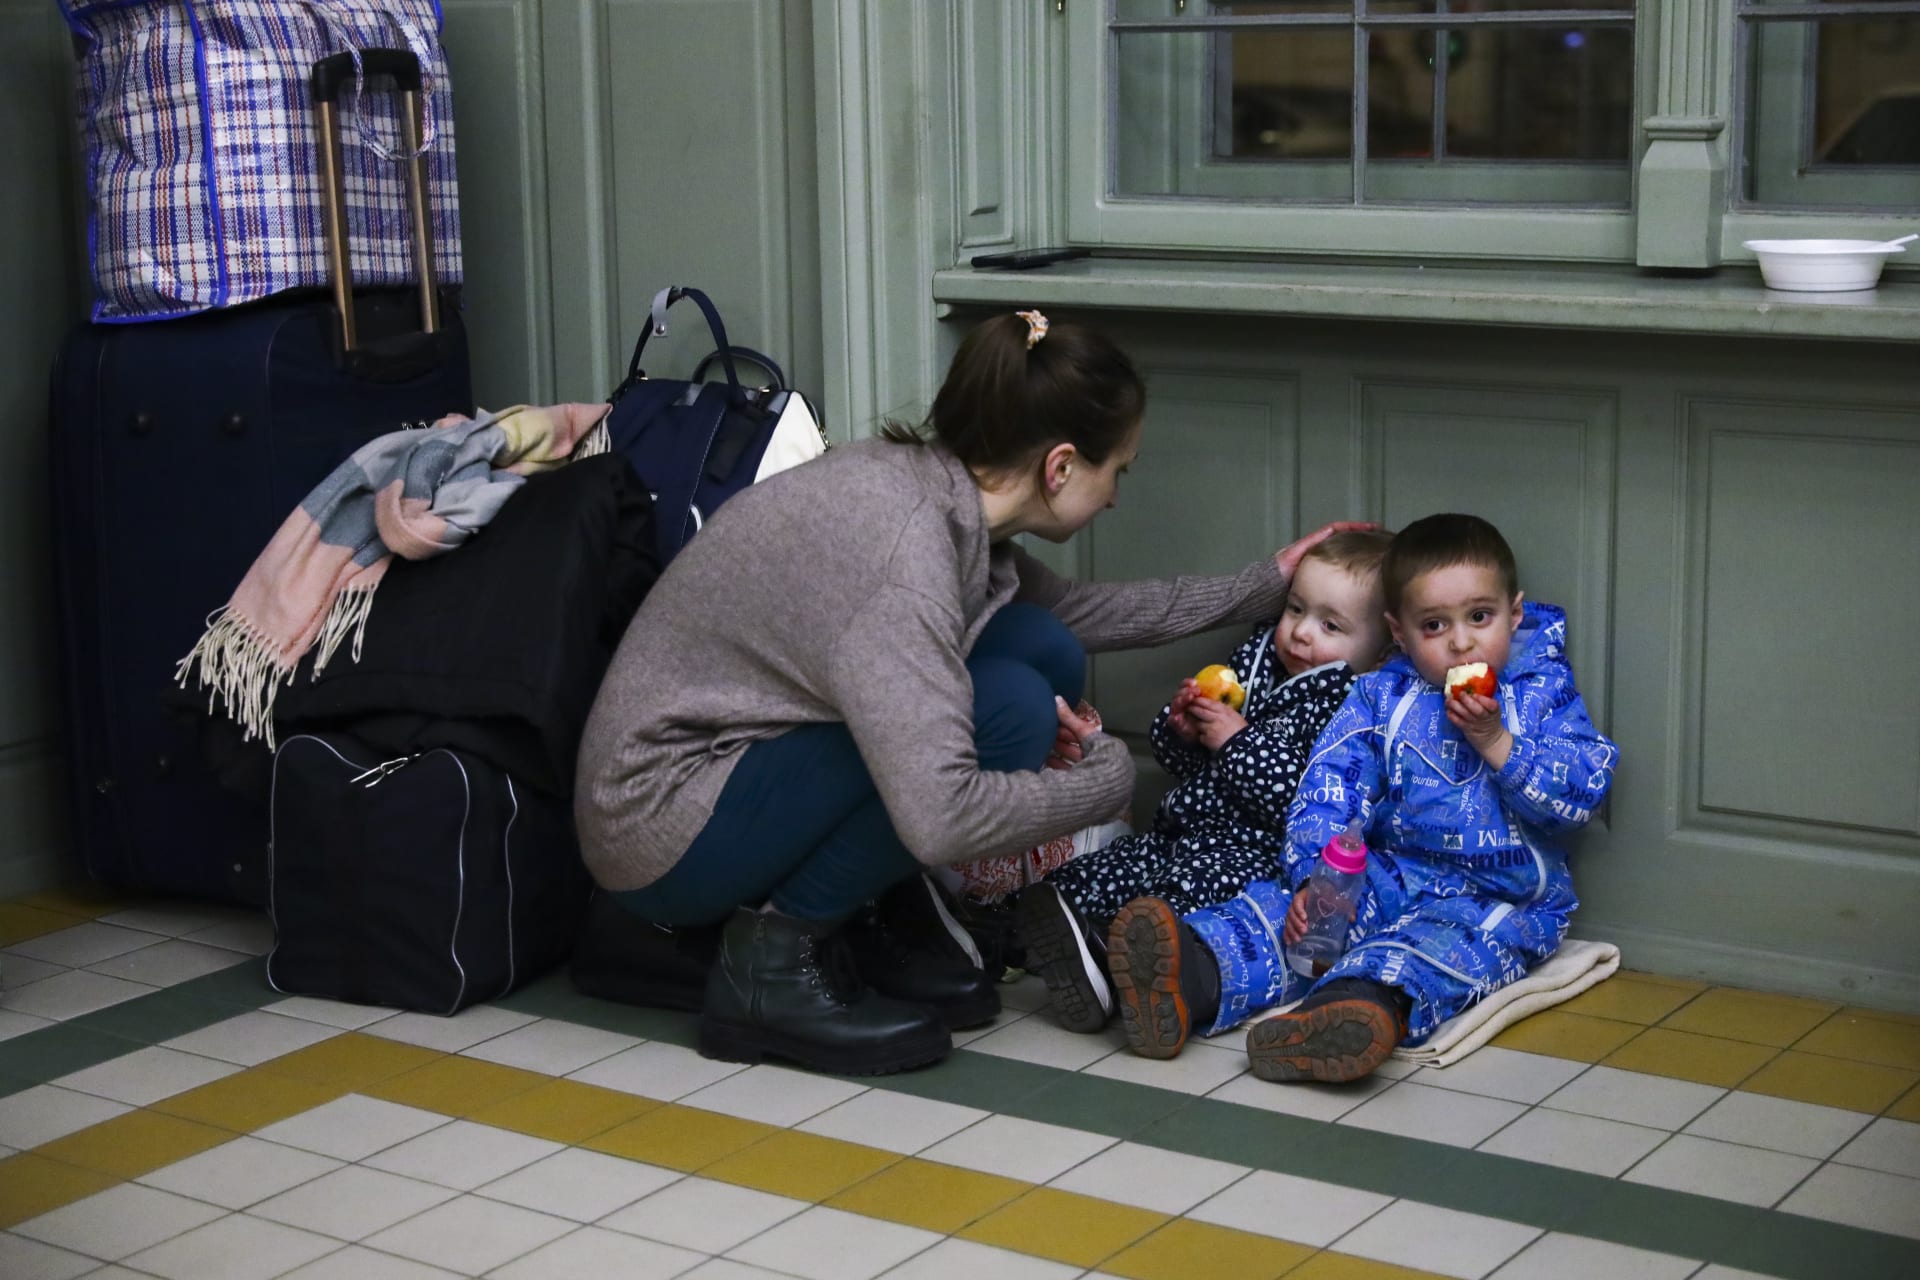 Matka s dětmi odpočívá v dočasném úkrytu v budově nádraží poté, co 24. února 2022 dorazila vlakem z Kyjeva na Ukrajině do polského Przemyslu.